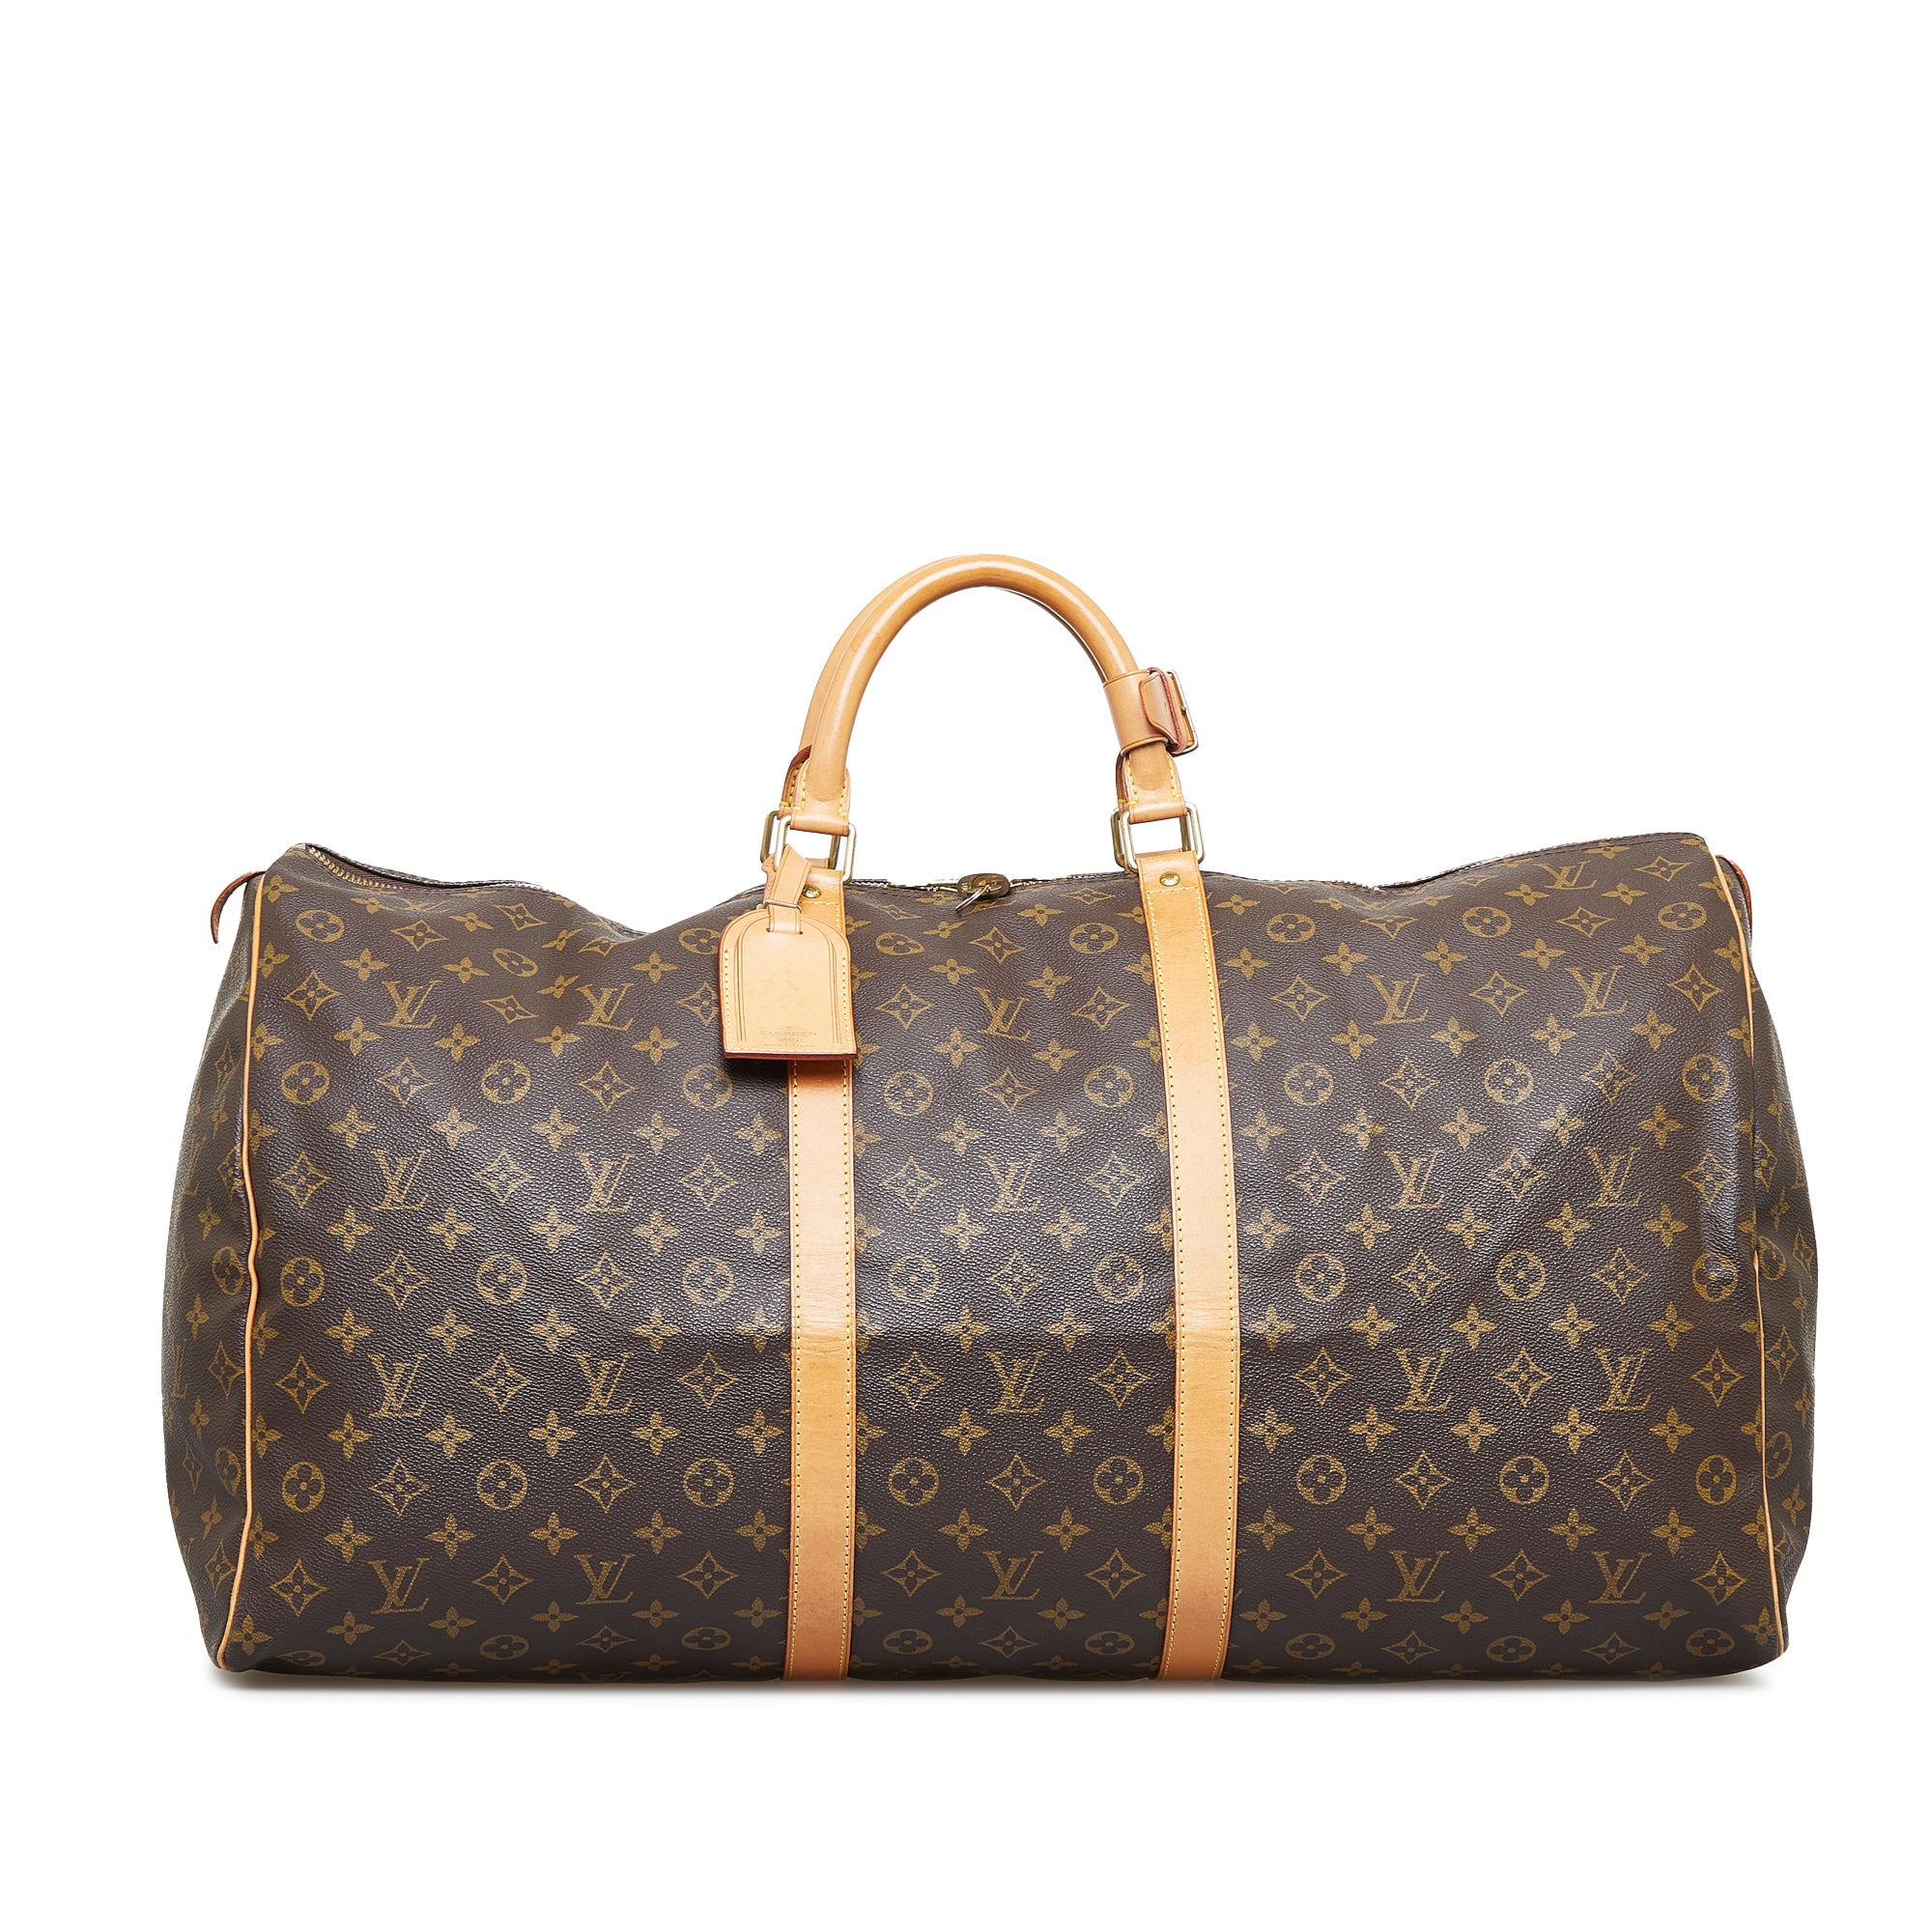 Shop Women's Louis Vuitton Duffle Bag